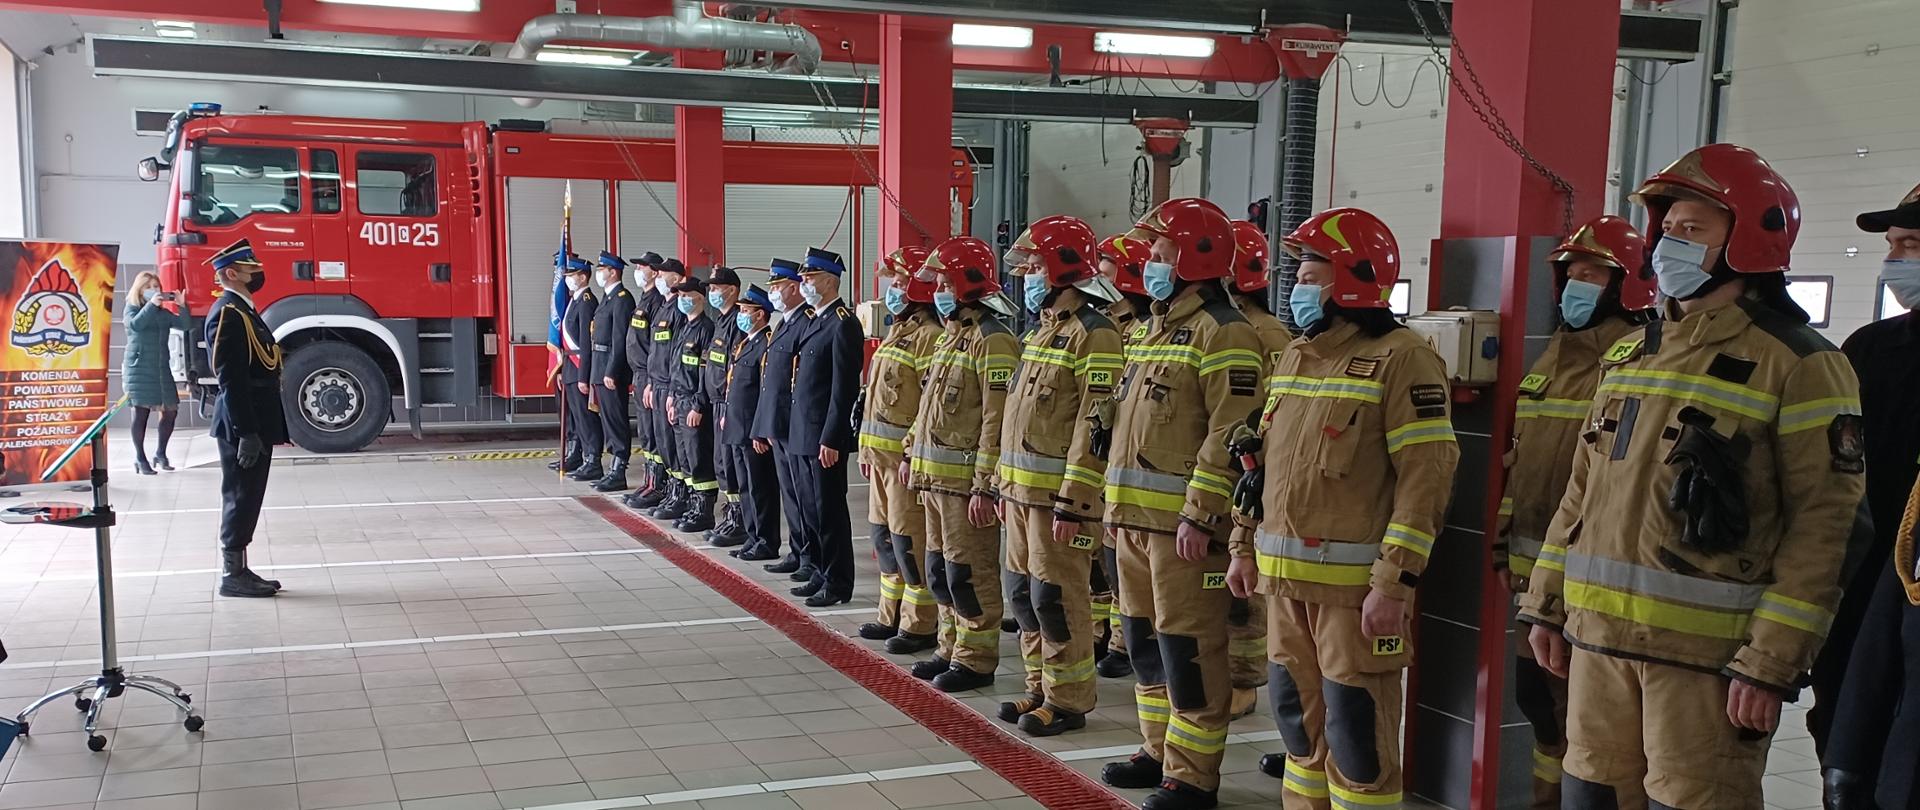 Zdjęcie przedstawia strażaków stojących w szeregu podczas zbiórki z okazji wręczenia odznaczeń, stopni służbowych i nagród.